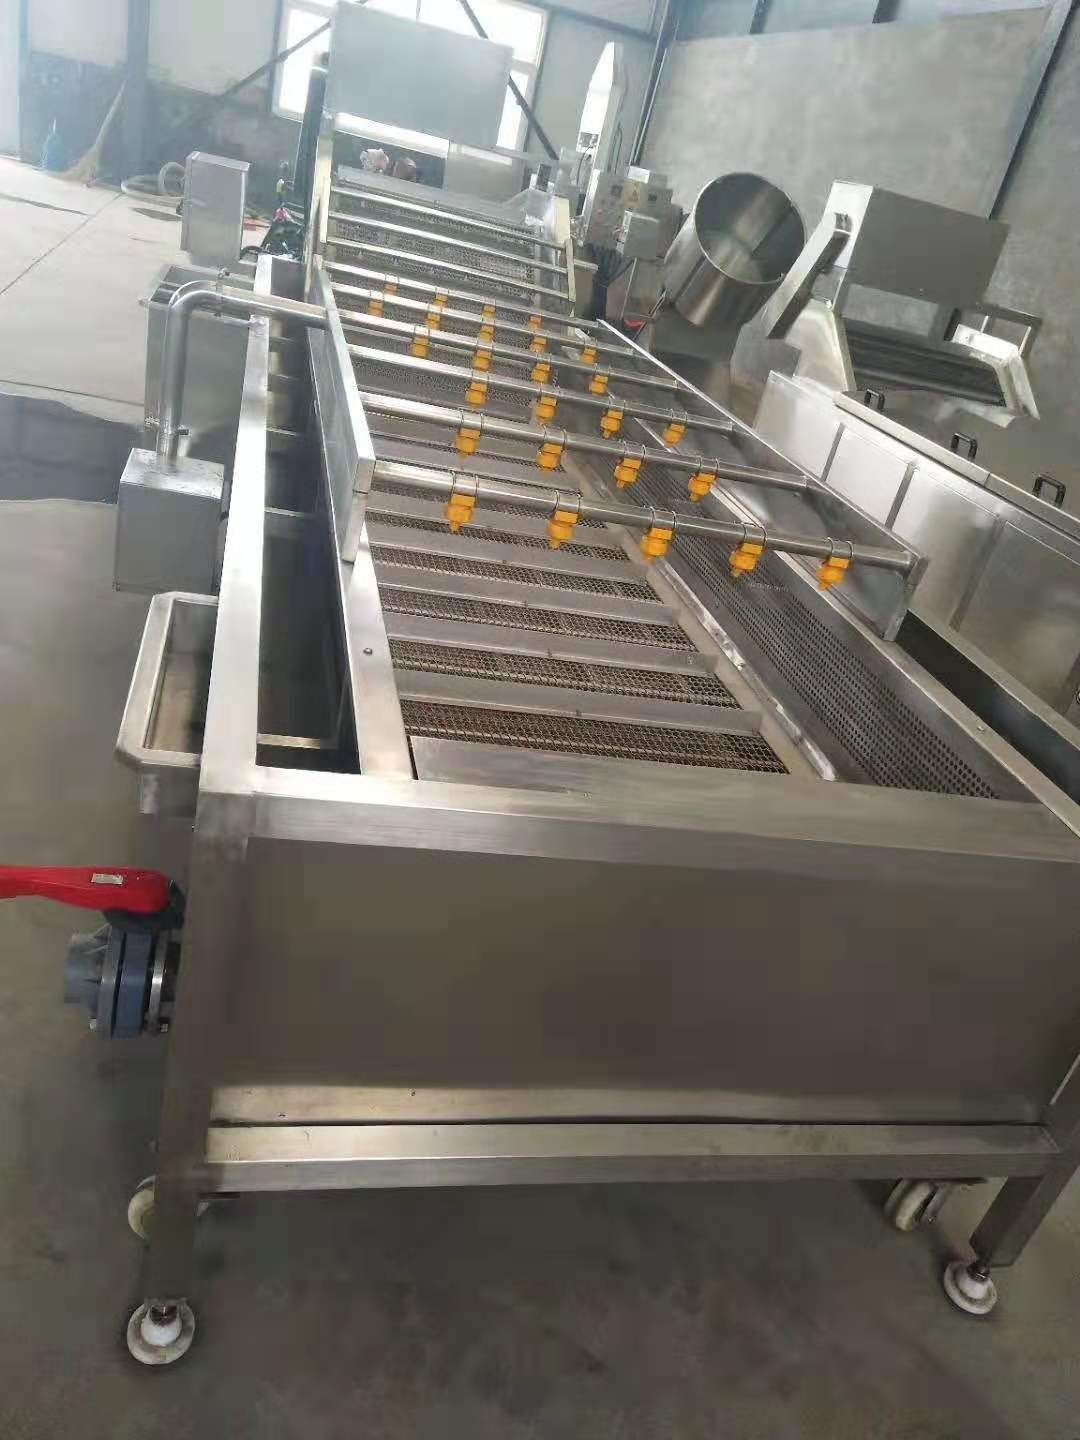 加工定做薯片生产线 大型倒蒸地瓜烘干设备 如益休闲食品设备厂